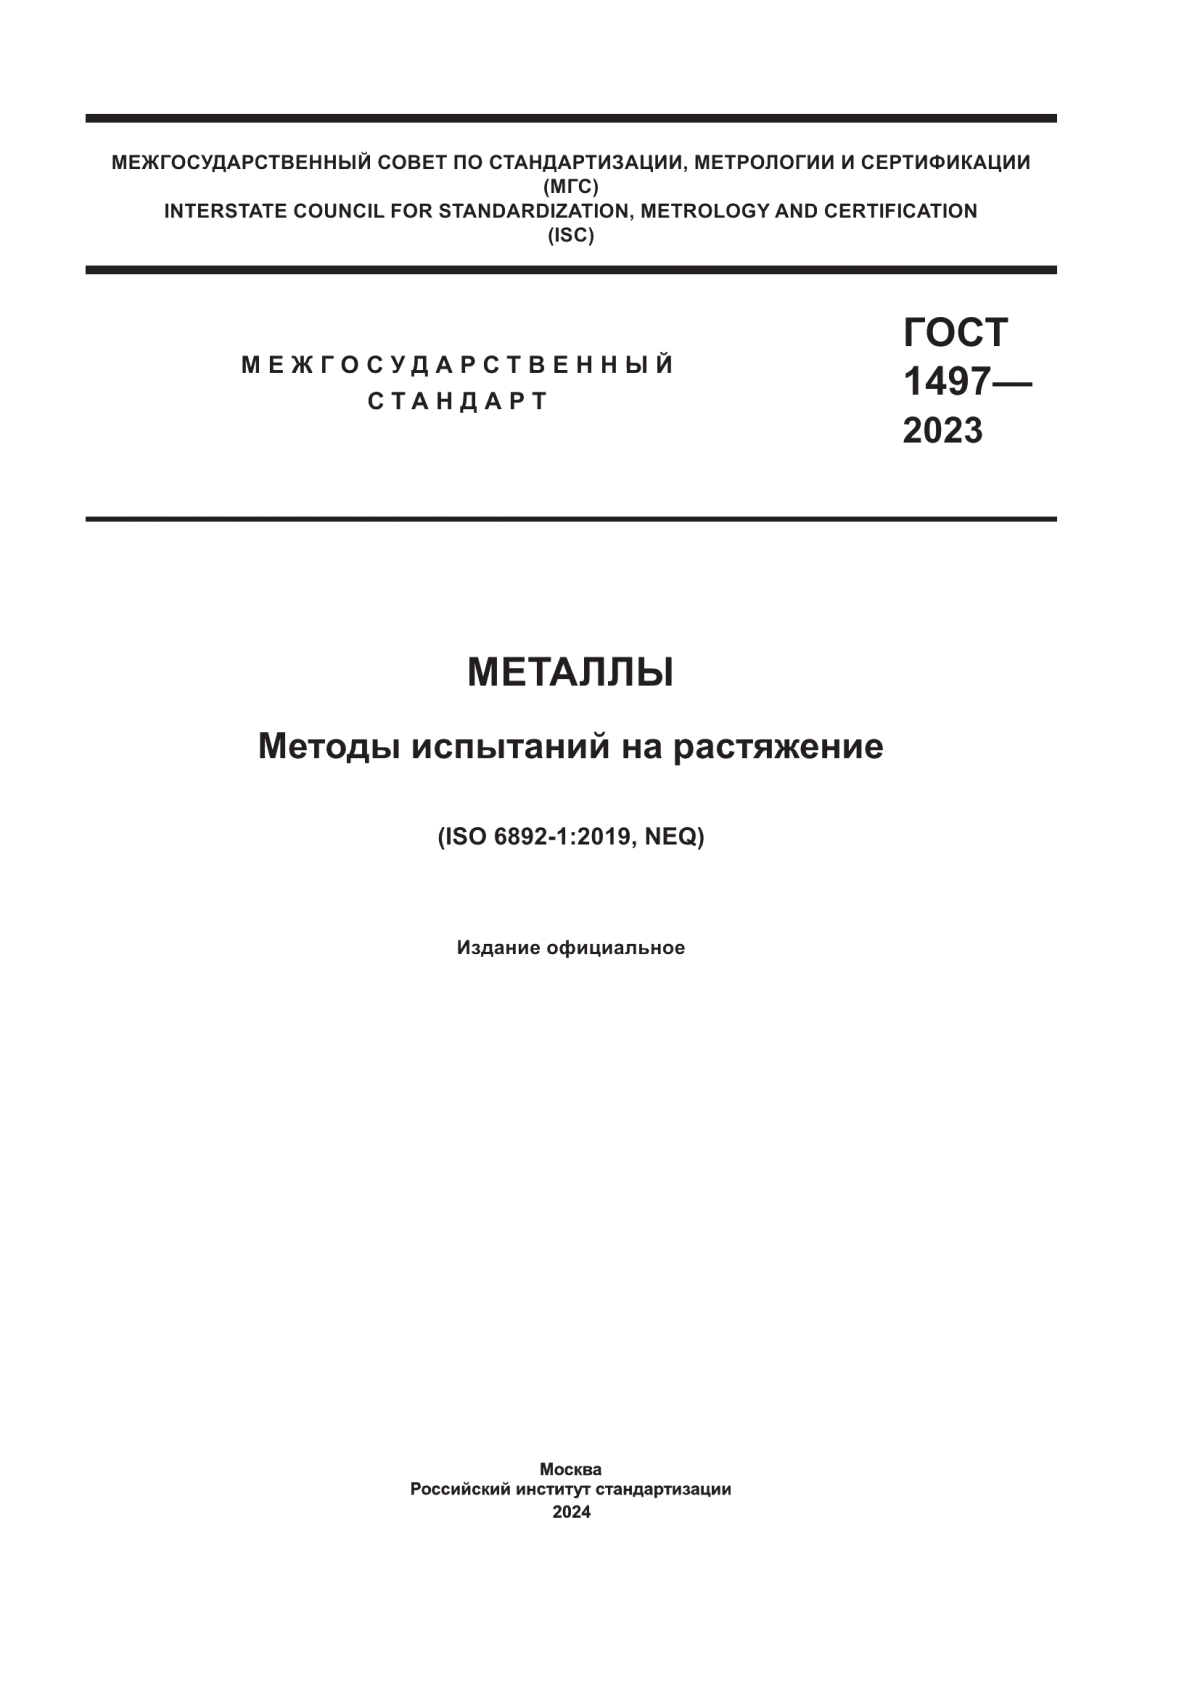 ГОСТ 1497-2023 Металлы. Методы испытаний на растяжение